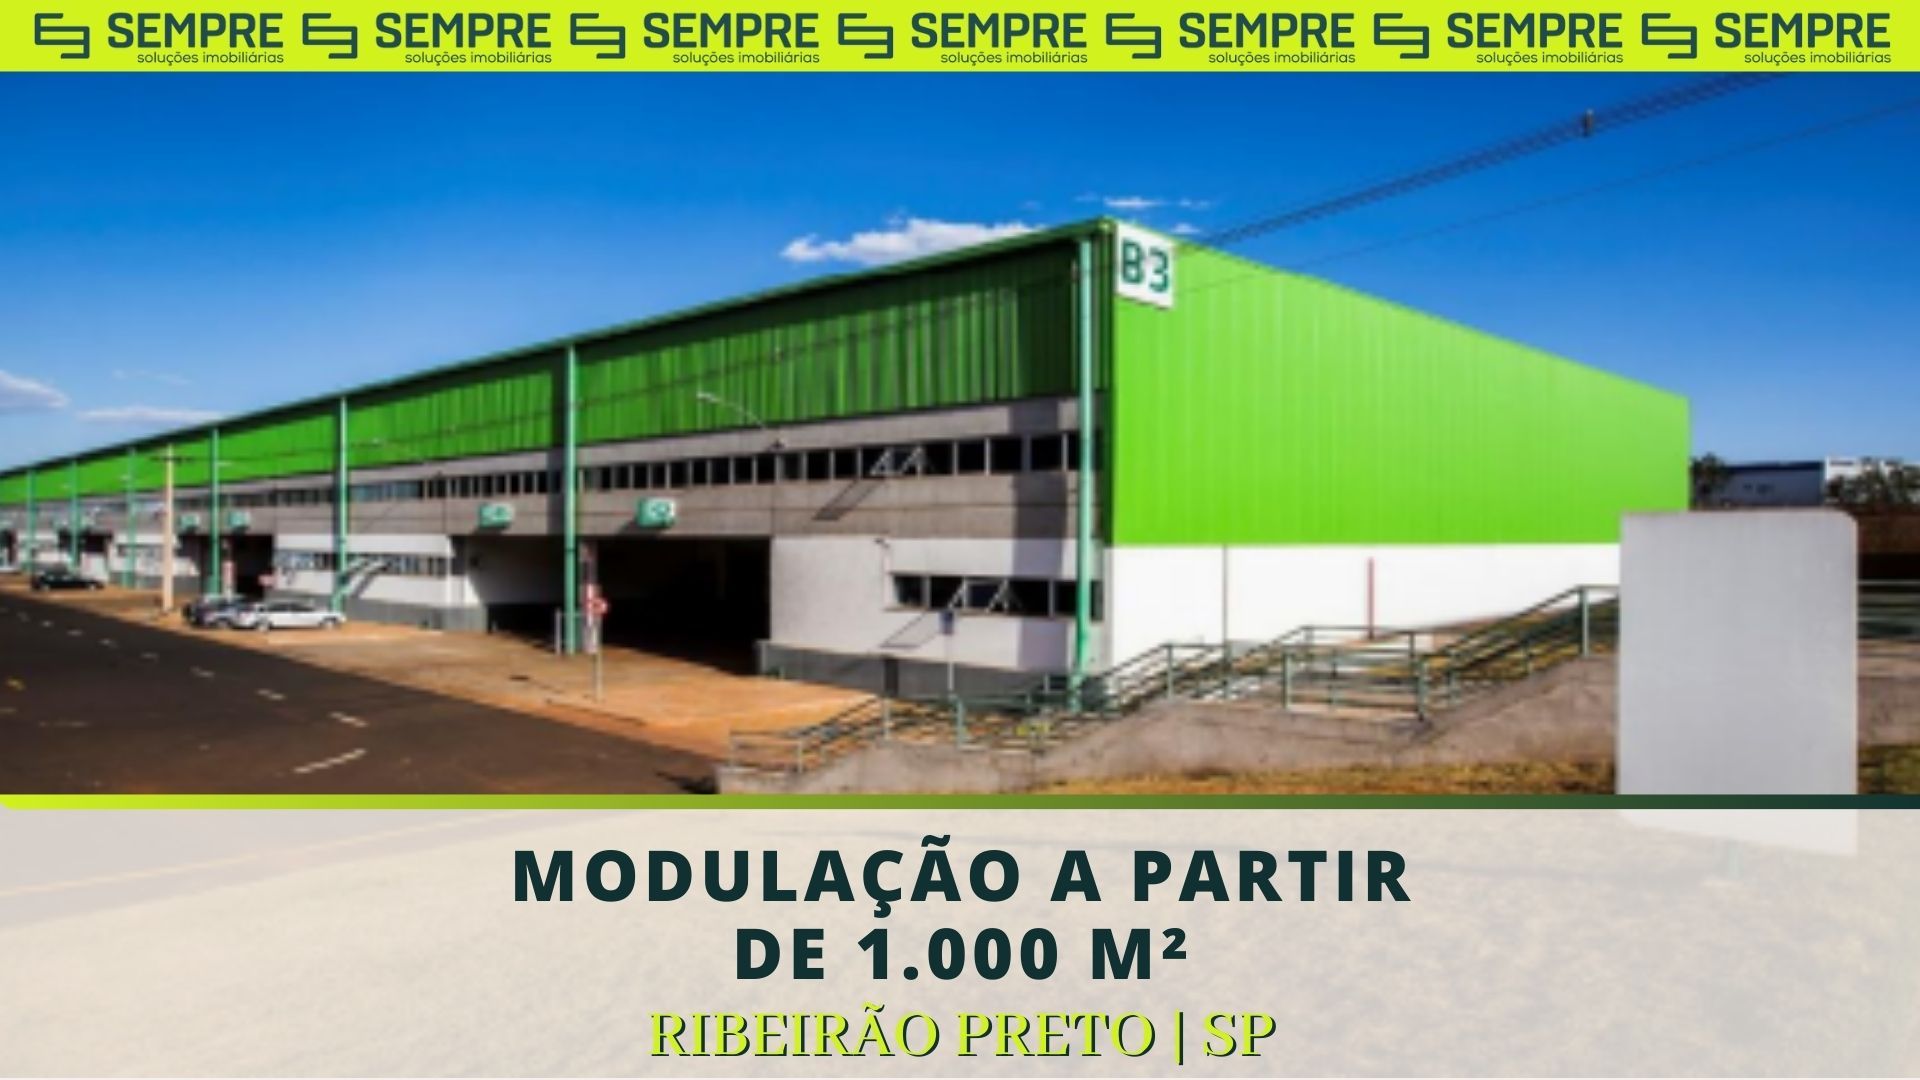 HGLG - RIBEIRÃO PRETO - Comércio e indústria - Jardim Salgado Filho,  Ribeirão Preto 1250583662